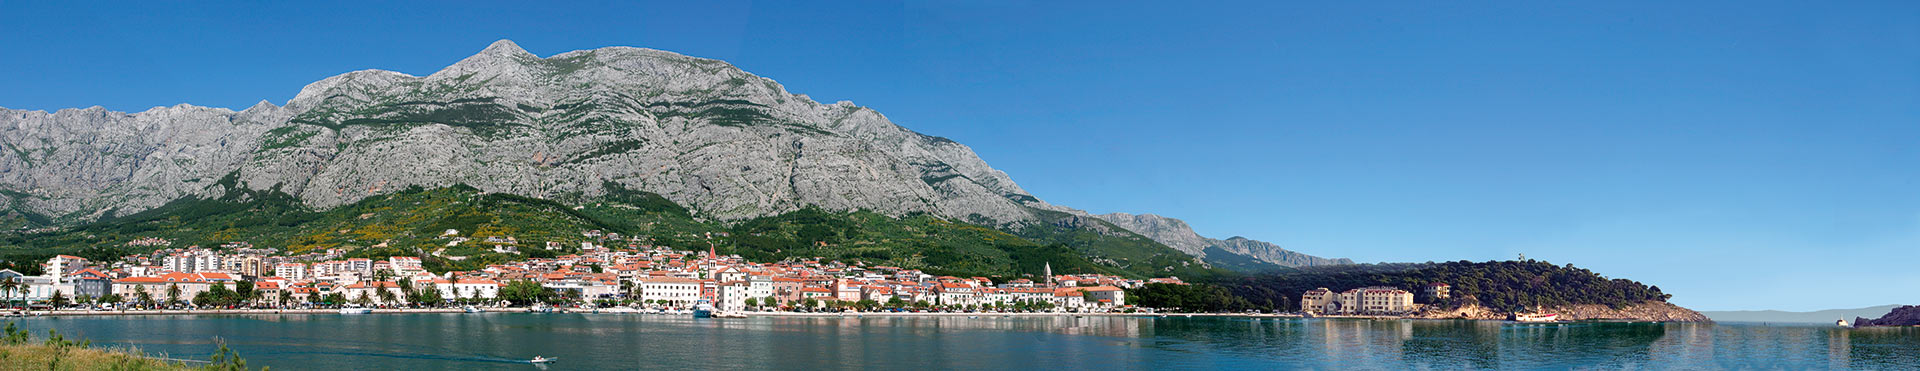 Wakacje w Chorwacji - Makarska Luksusowe apartamenty dla 8 osób - Ivan a5